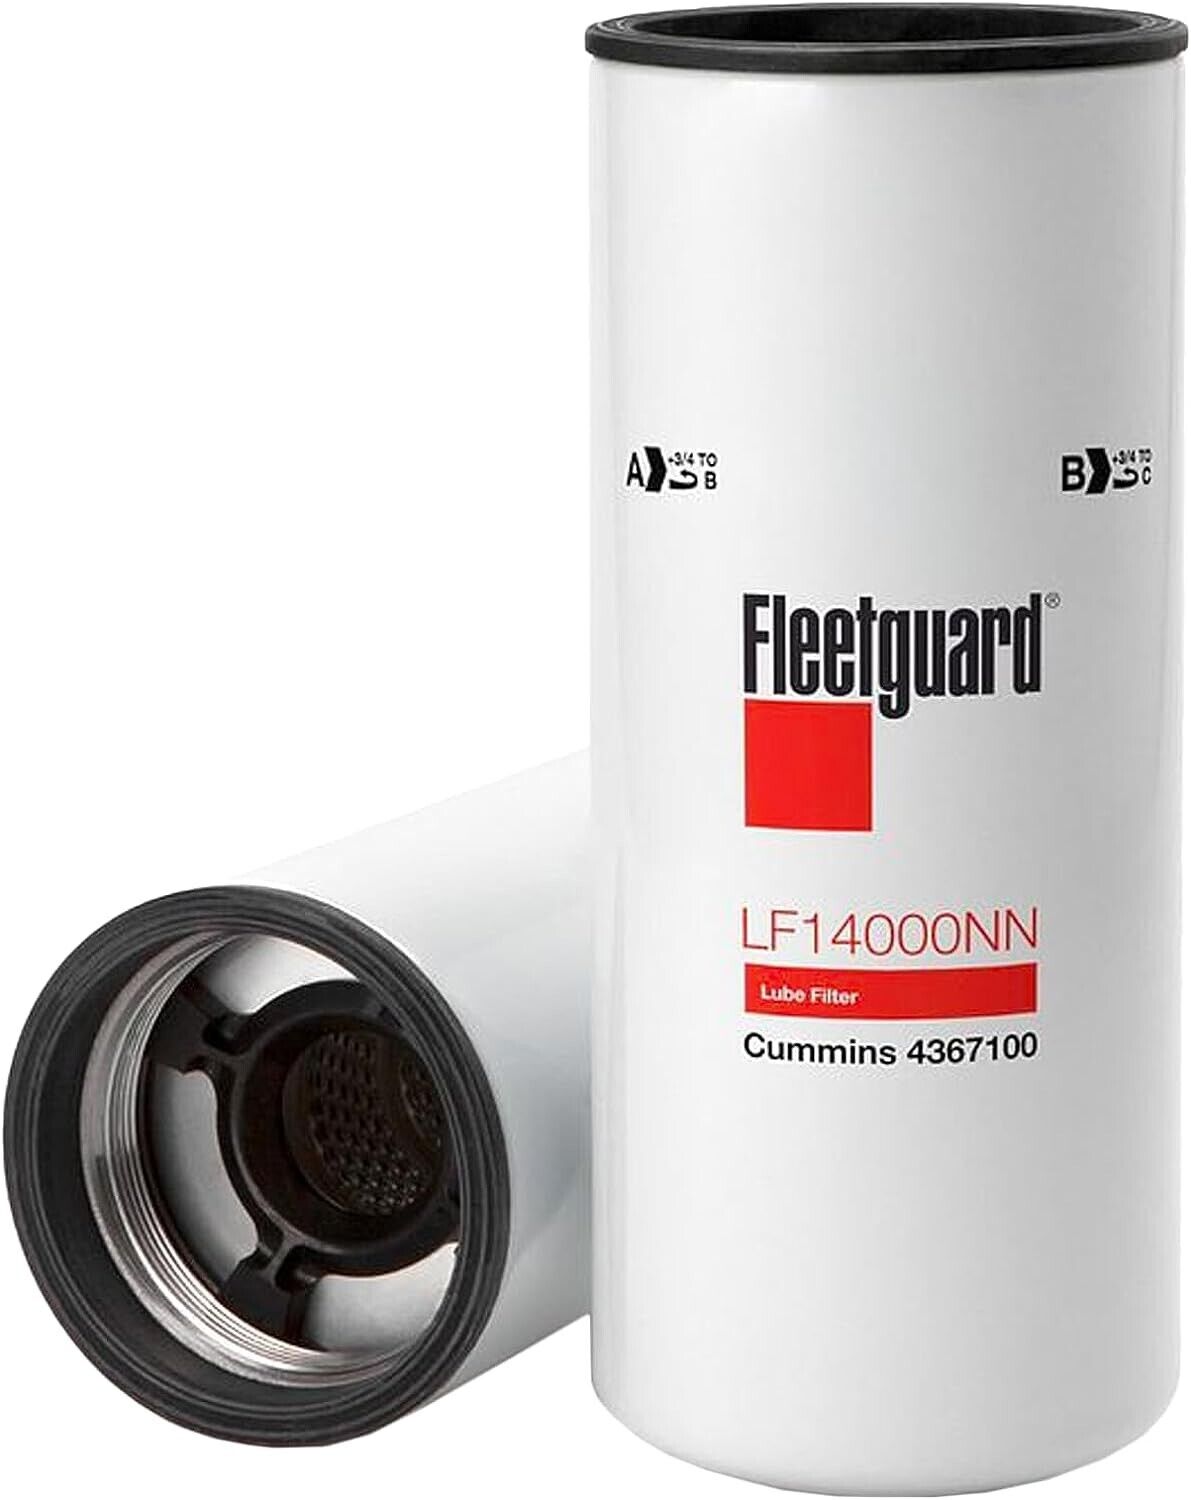 Genuine Fleetguard LF14000NN Oil Filter Cummins ISX 4367100 